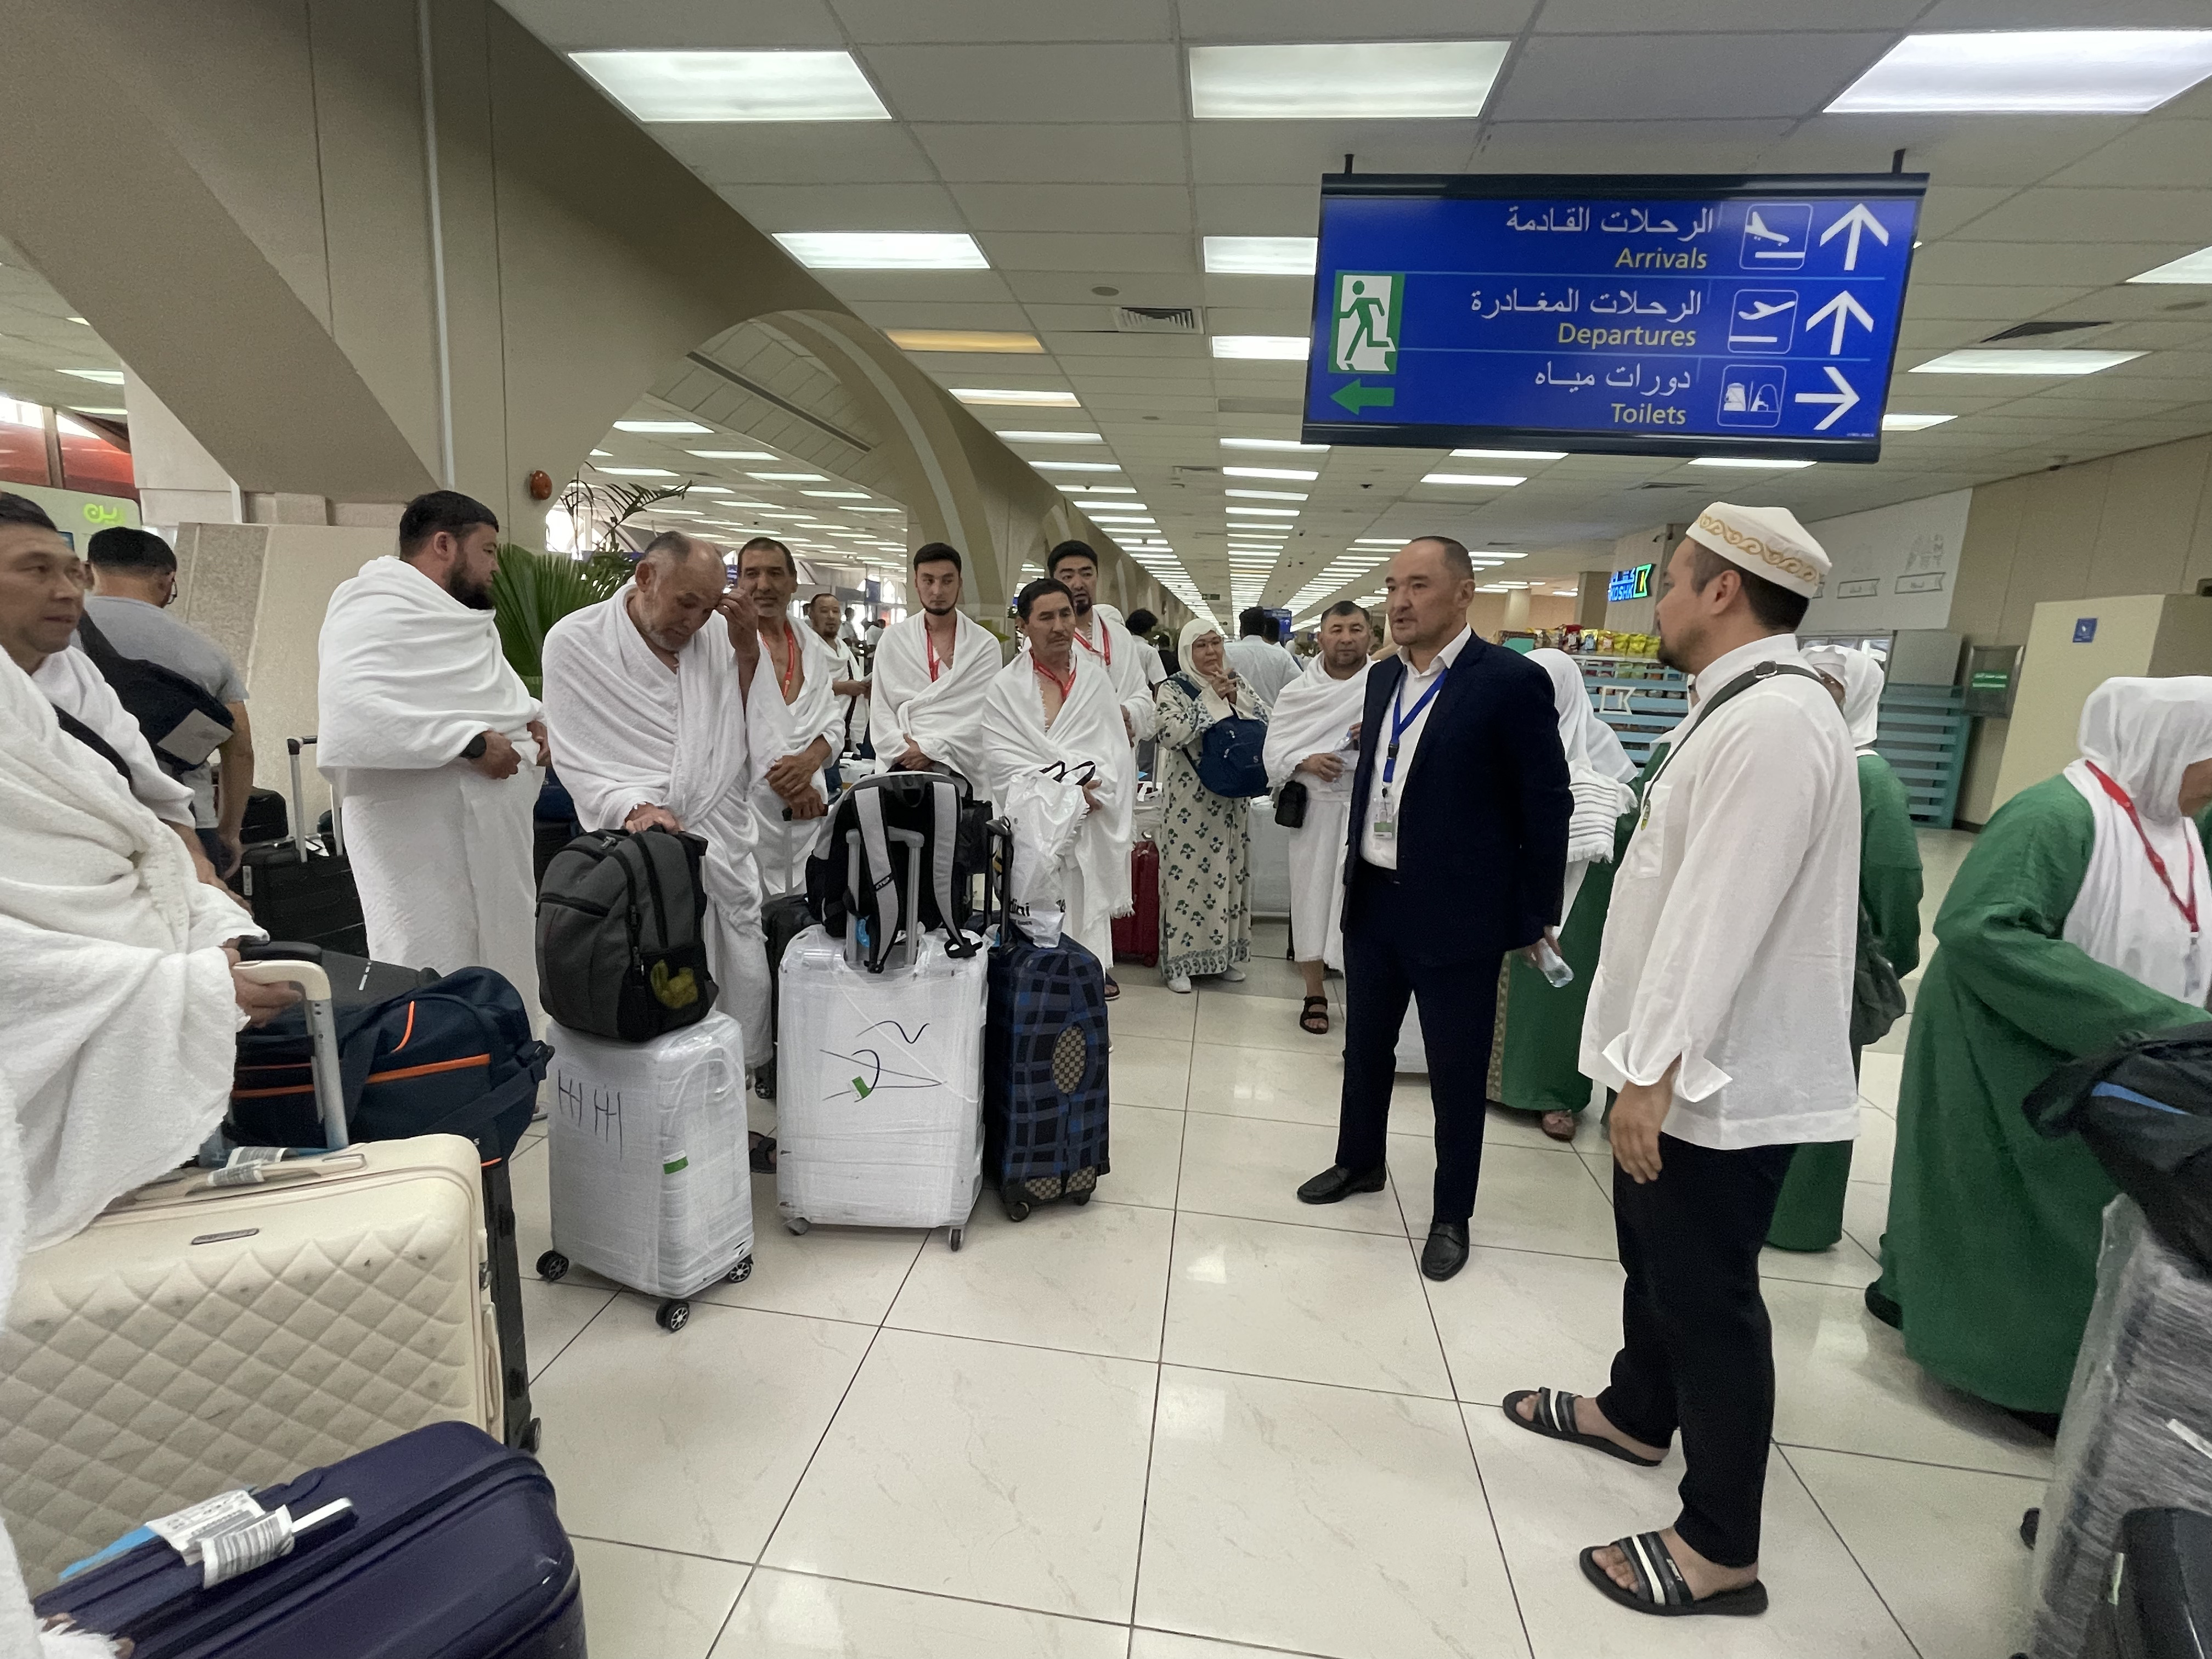 Казахстанские паломники начали прибывать в Королевство Саудовской Аравии для совершения хаджа